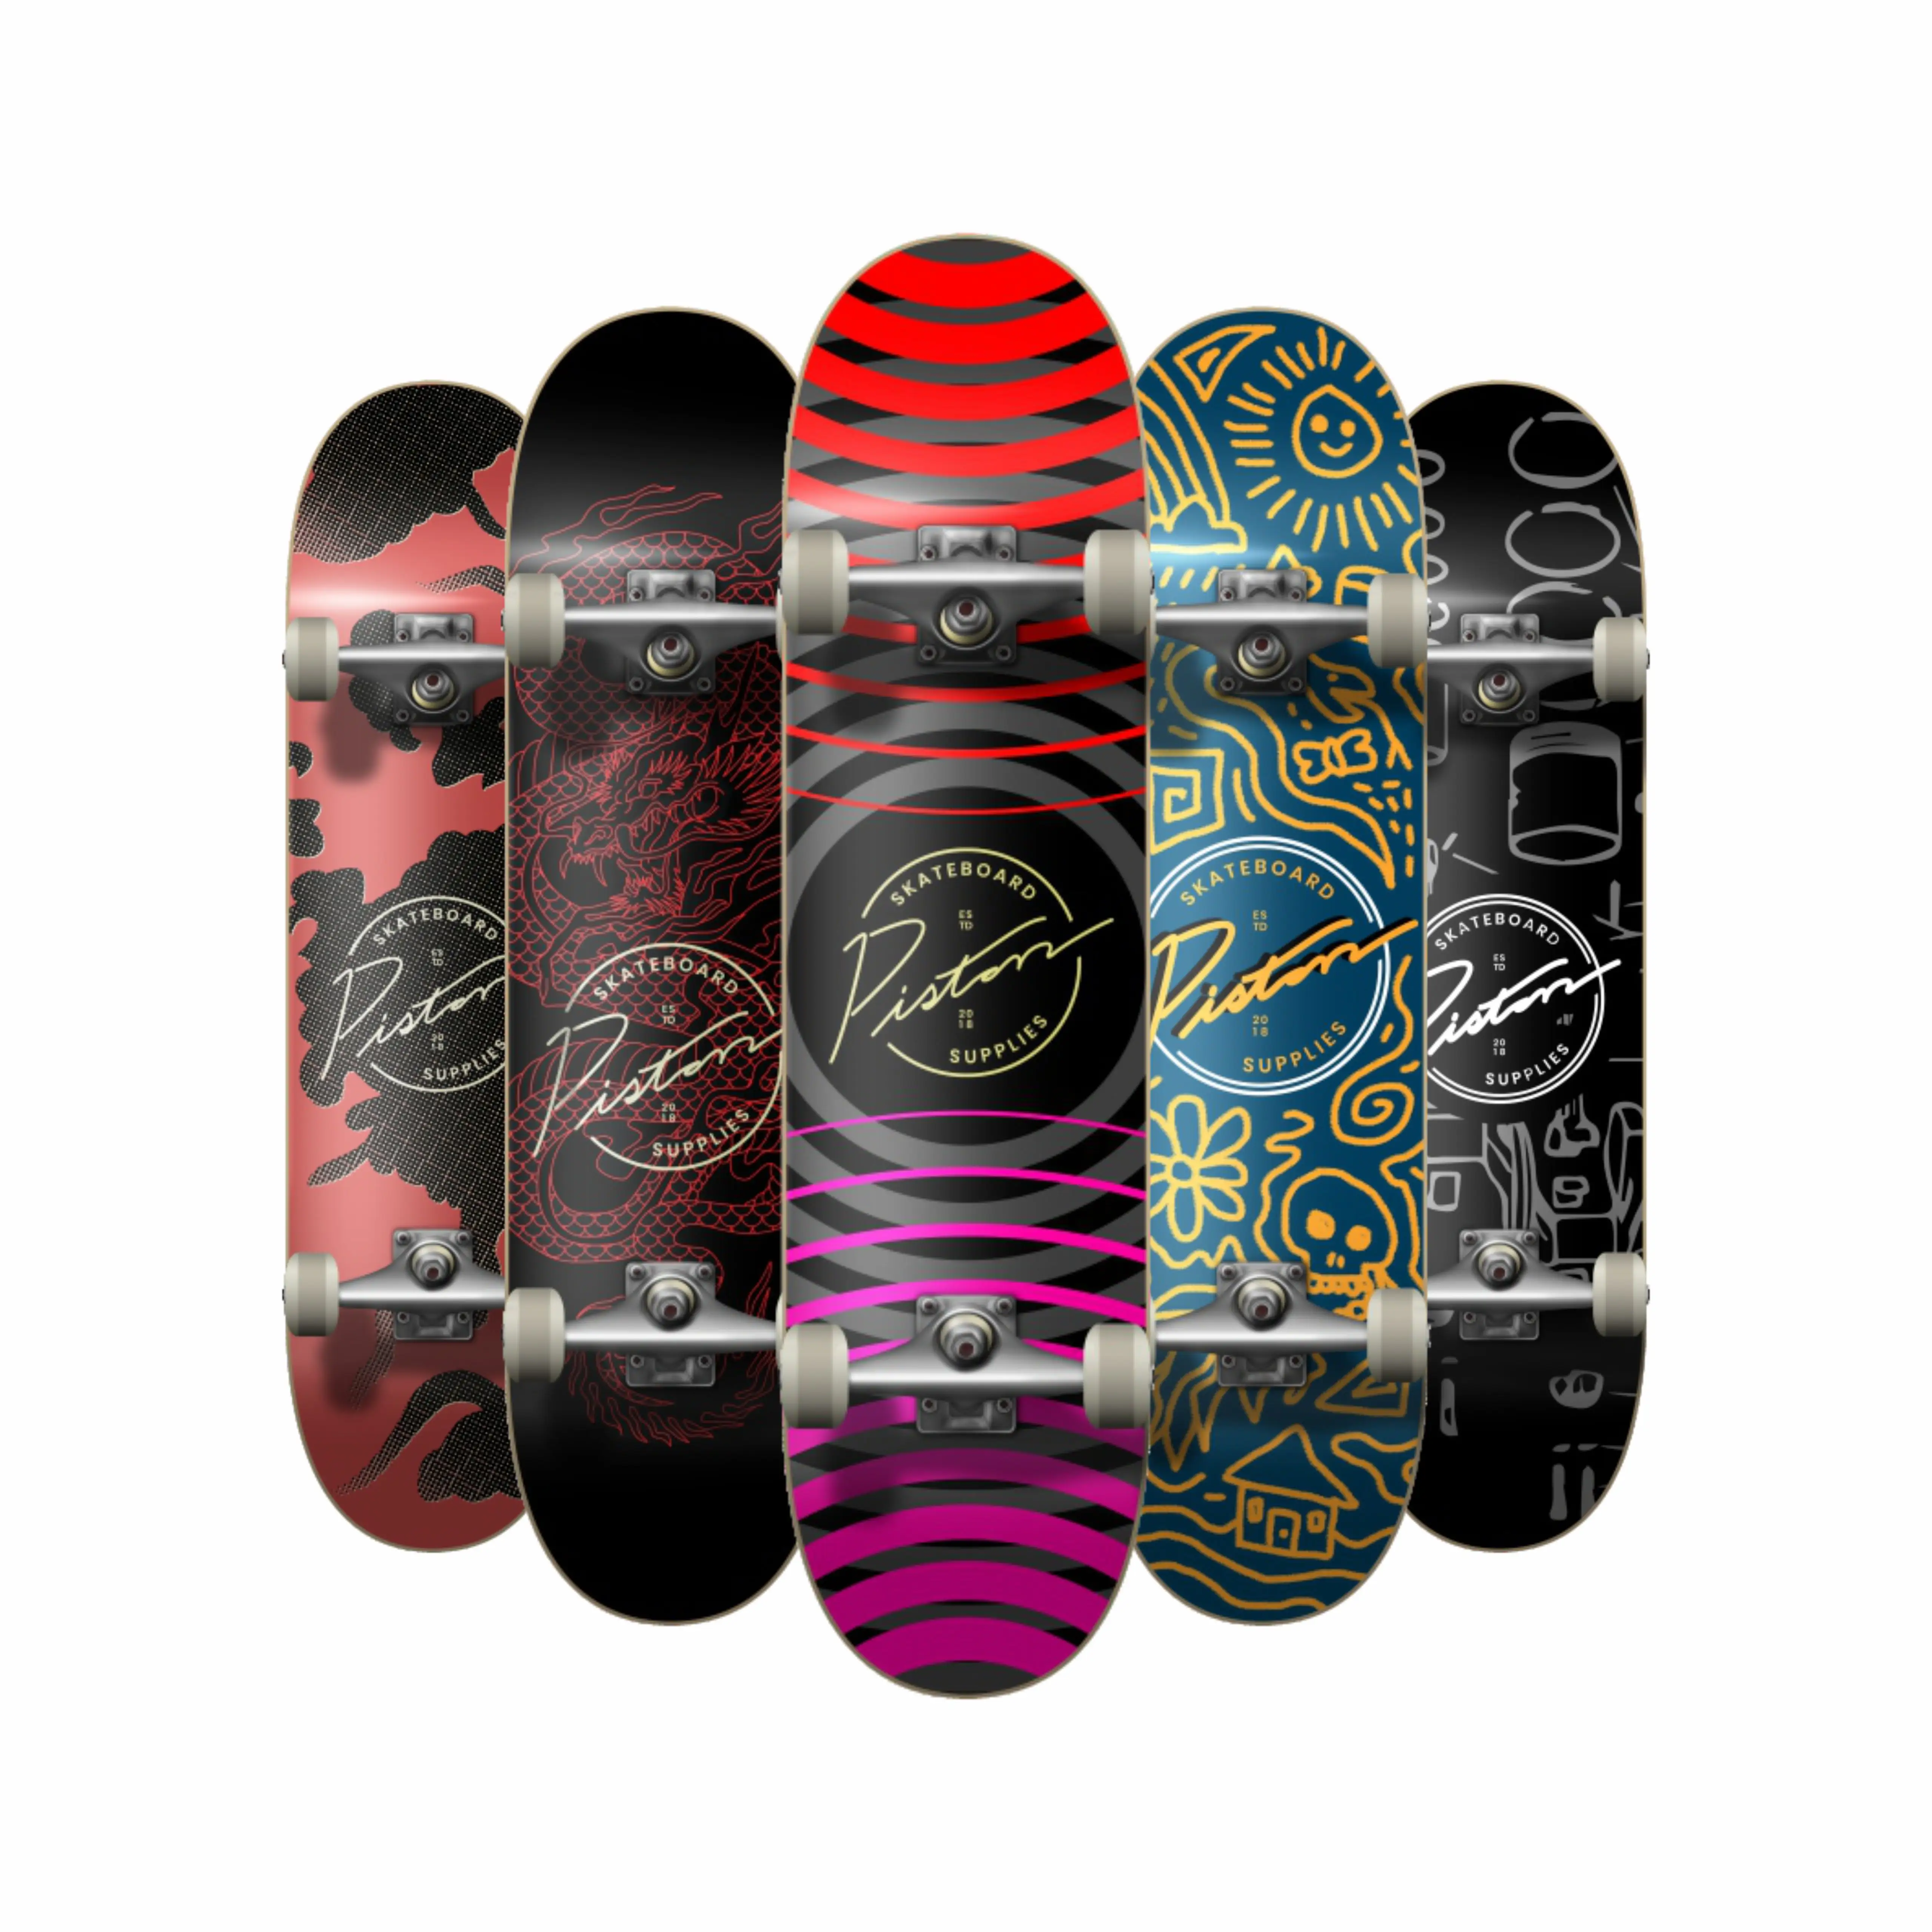 Hot Bán Hàng Mỹ Thương Hiệu Chất Lượng Cao Complete Skateboard Sàn 7-Lớp Maple Bốn-Bánh Xe Skate Board